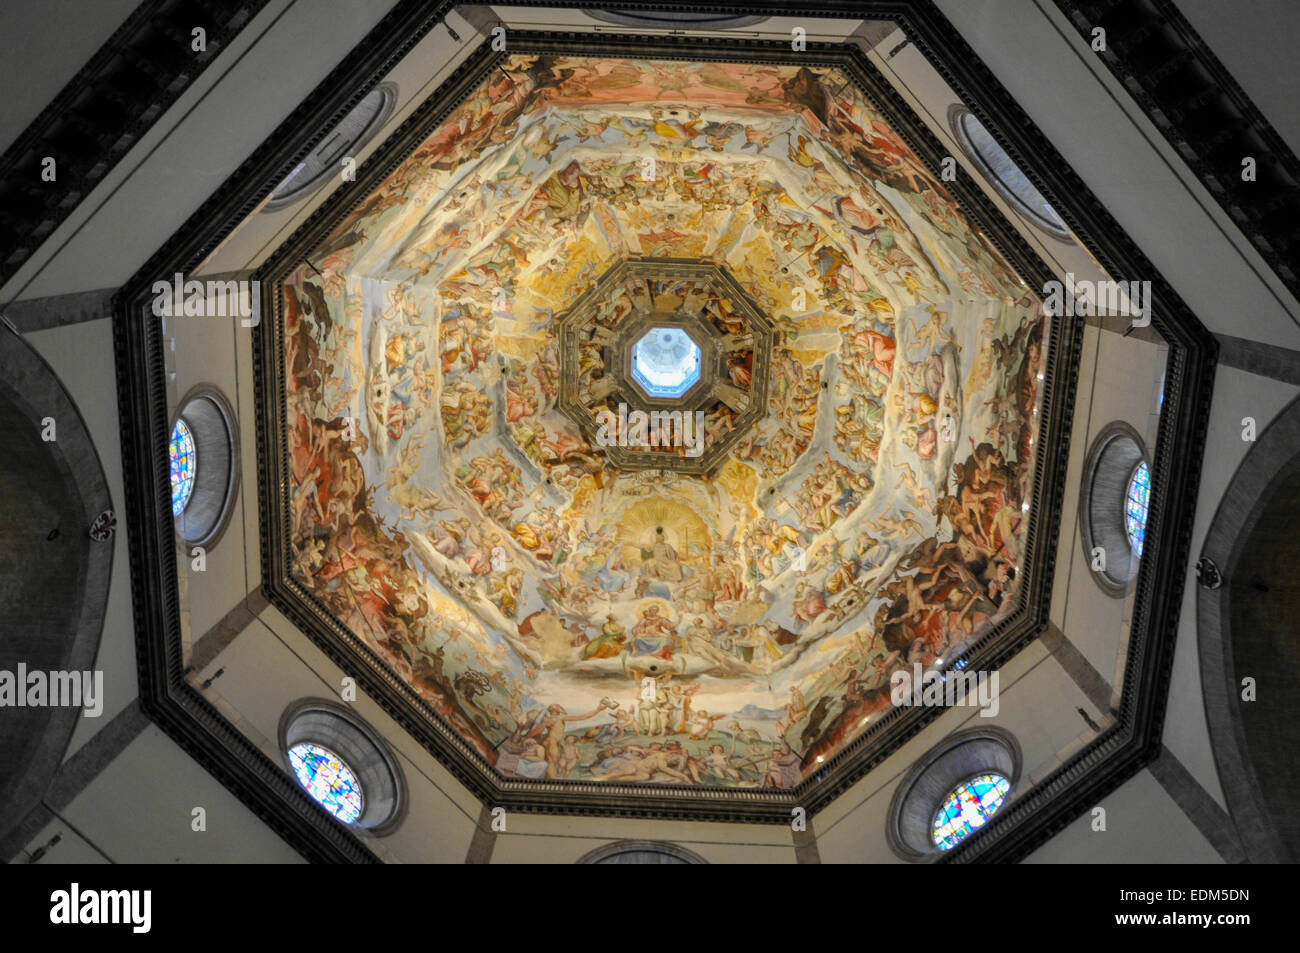 Basilica di Santa Maria del Fiore, Florence, Italy Stock Photo